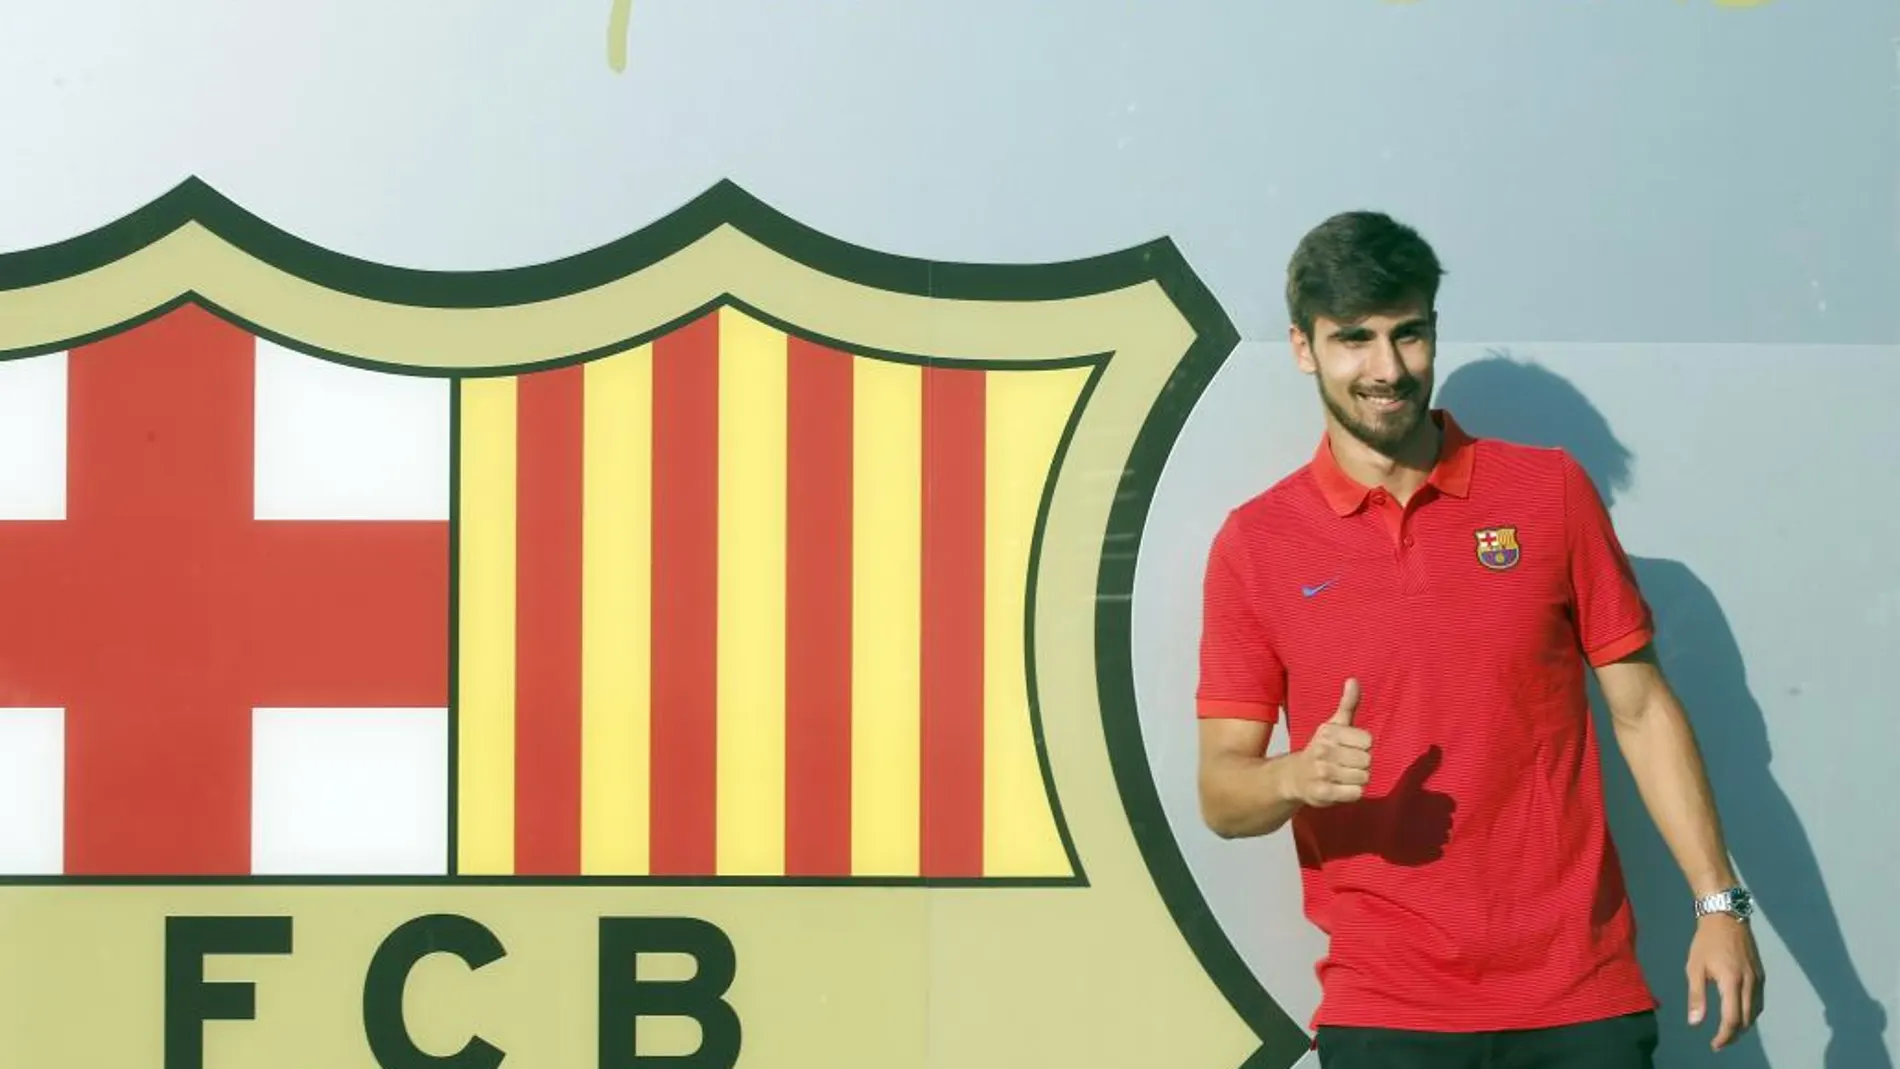 Presentación del nuevo jugador del FC Barcelona, el portugués André Gomes, esta tarde delante del escudo del club.